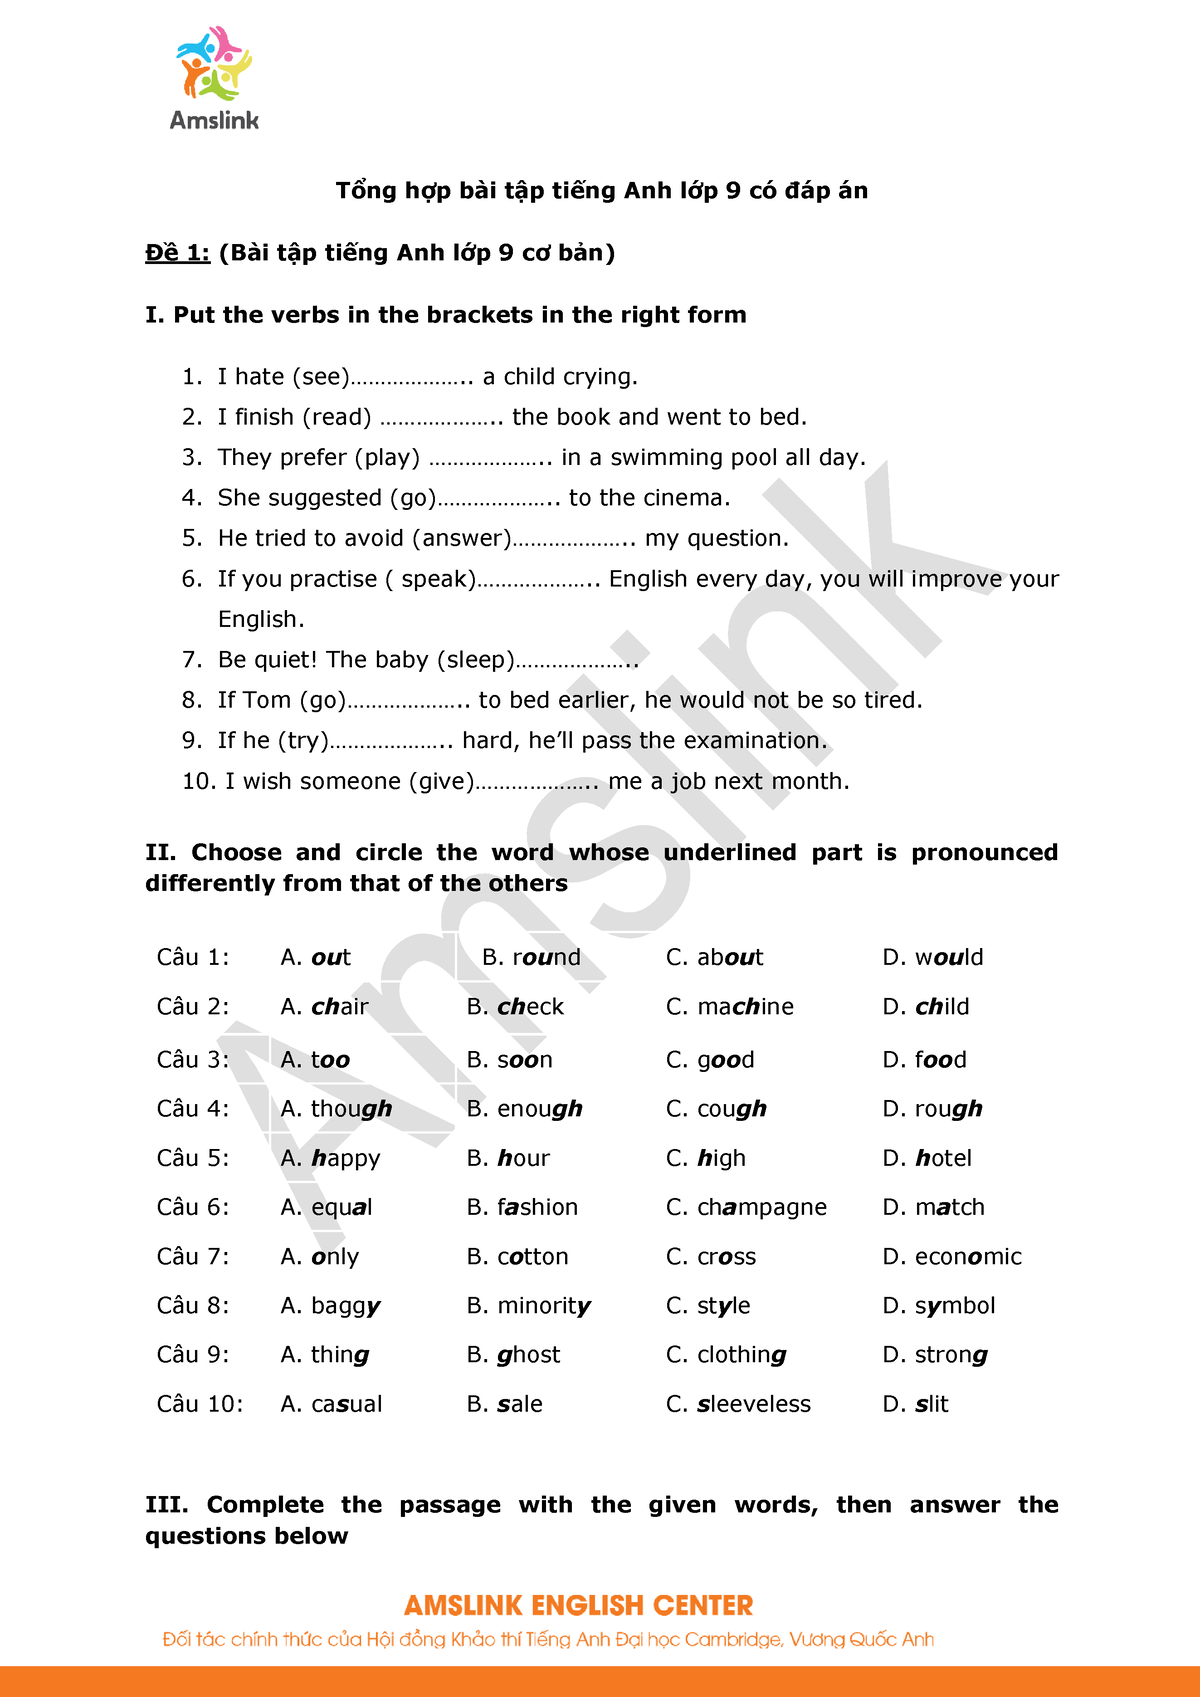 Amslink - Tổng hợp bài tập tiếng Anh lớp 9 có đáp án - Tổng hợp bài tập tiếng Anh lớp 9 có đáp án Đề - StuDocu